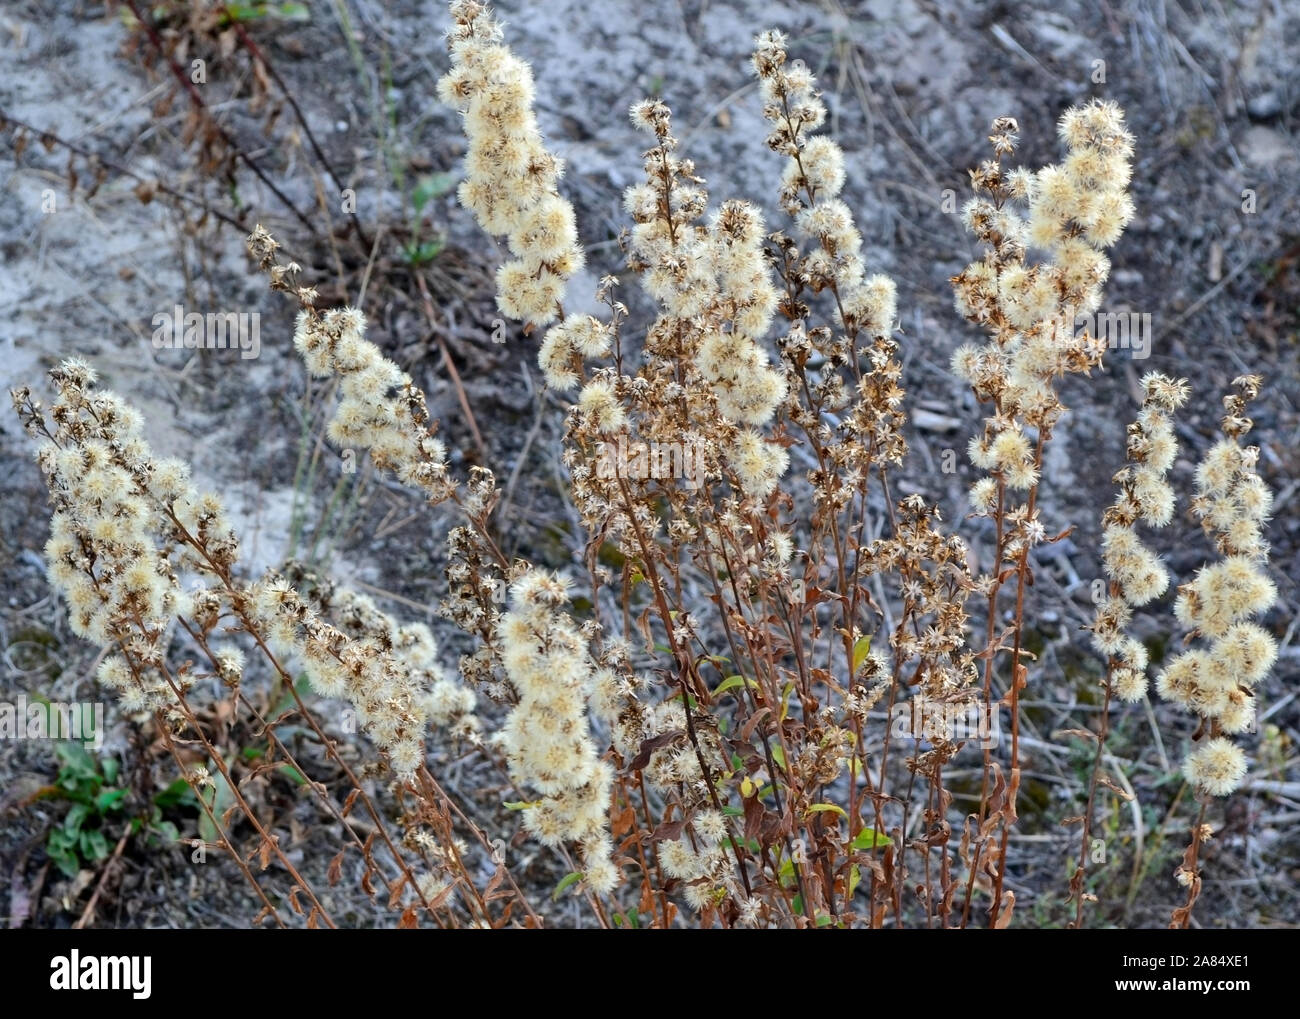 La mostra fotografica di fiori selvatici in autunno dopo la fioritura Foto Stock